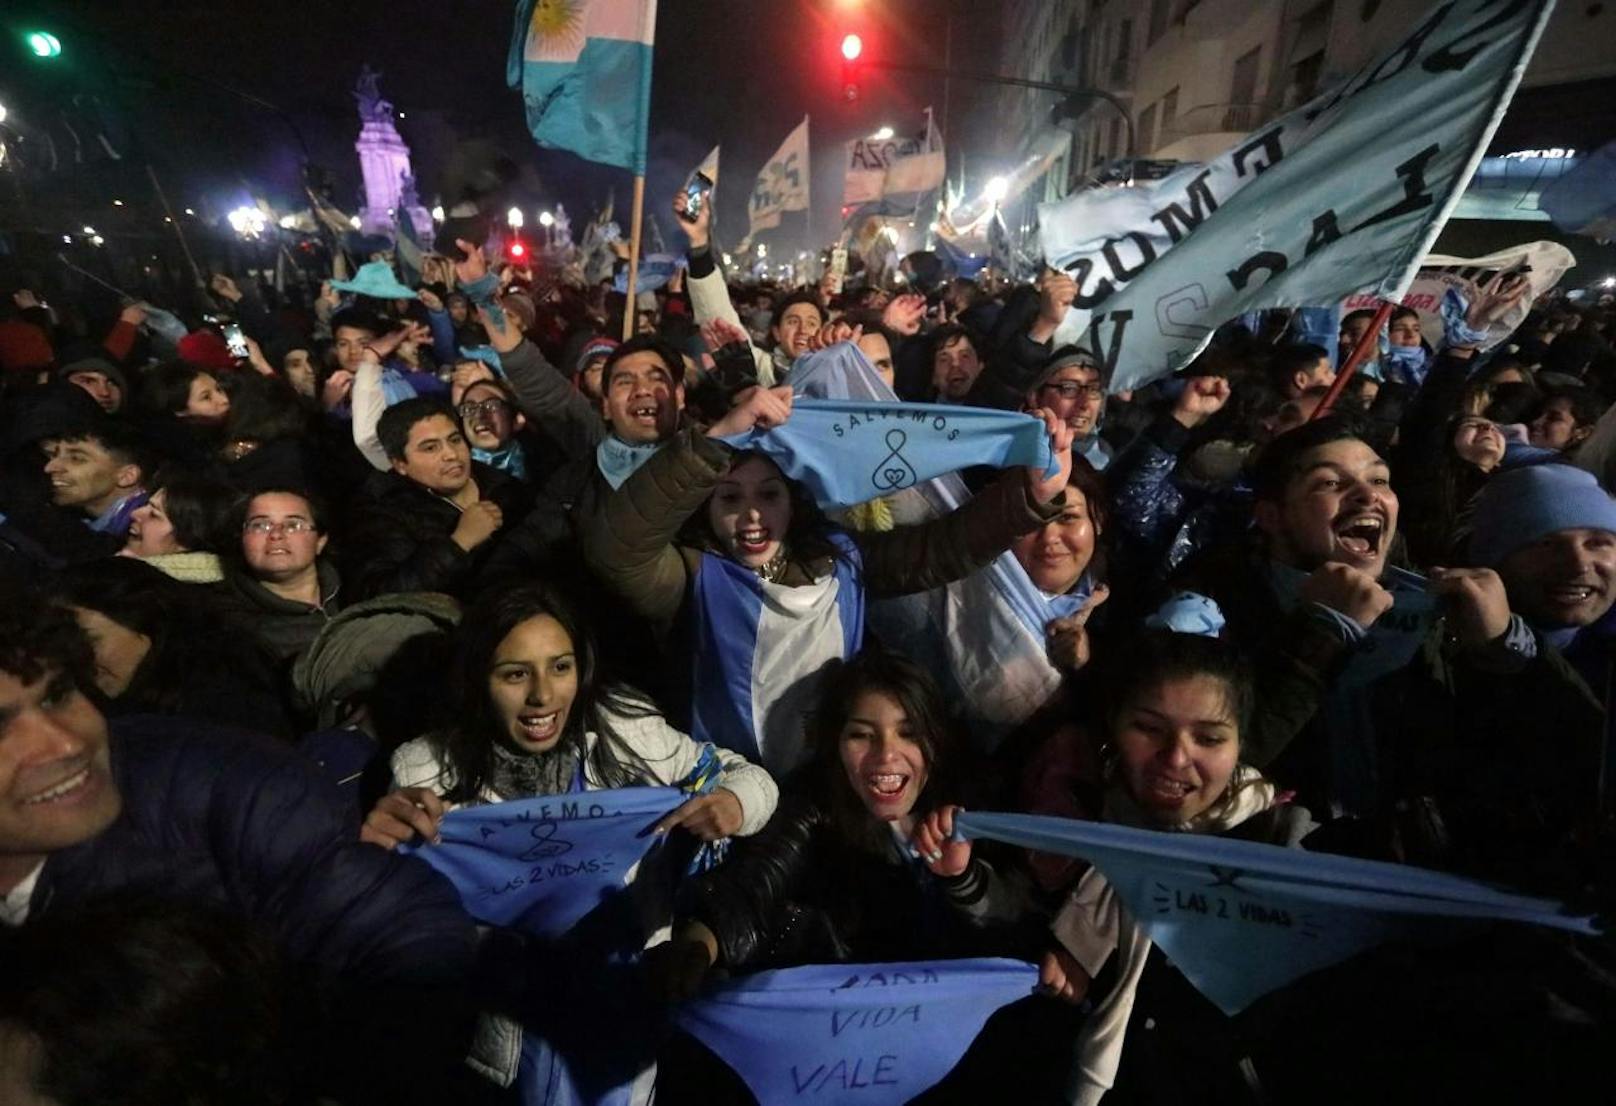 Das argentinische Parlament stimmte mit knapper Mehrheit für die Beibehaltung des gegenwärtigen Abtreibungsverbots. Tausende - vor allem Frauen - demonstrierten gegen die Entscheidung.